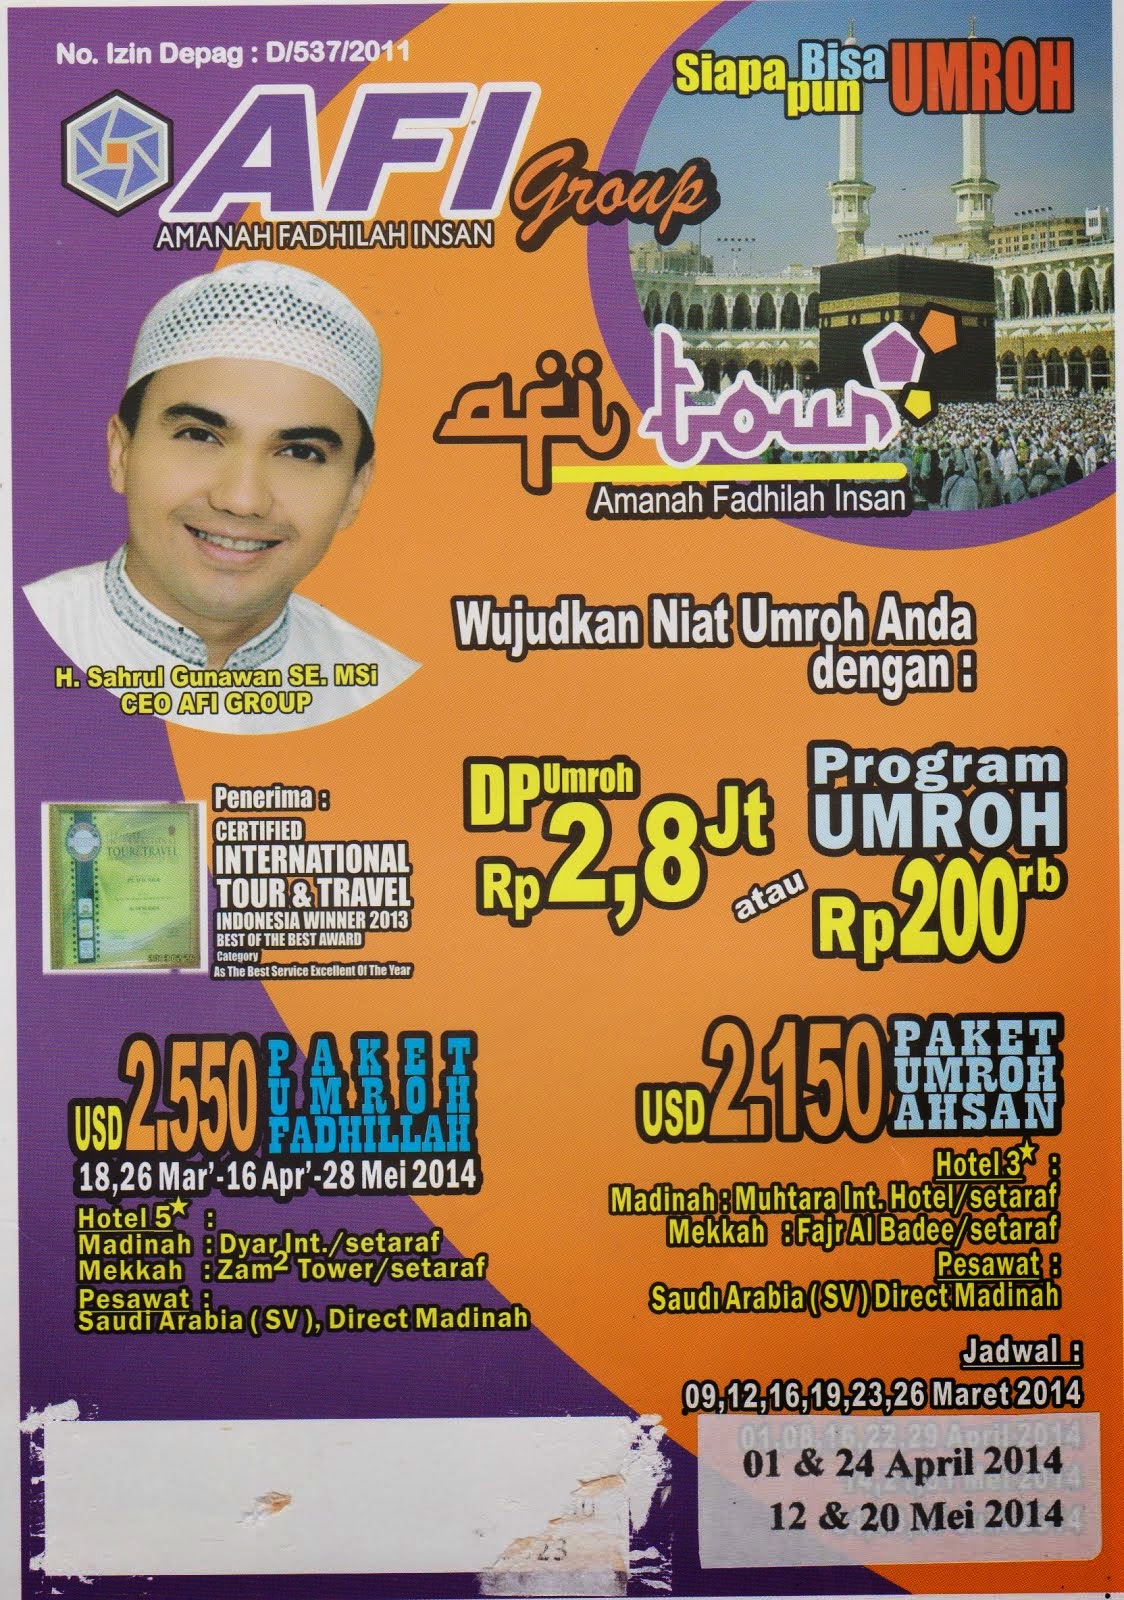 Umroh Murah | Umroh Saga Mulia Pekanbaru | Umroh Cicilan Murah | Call 082385574657